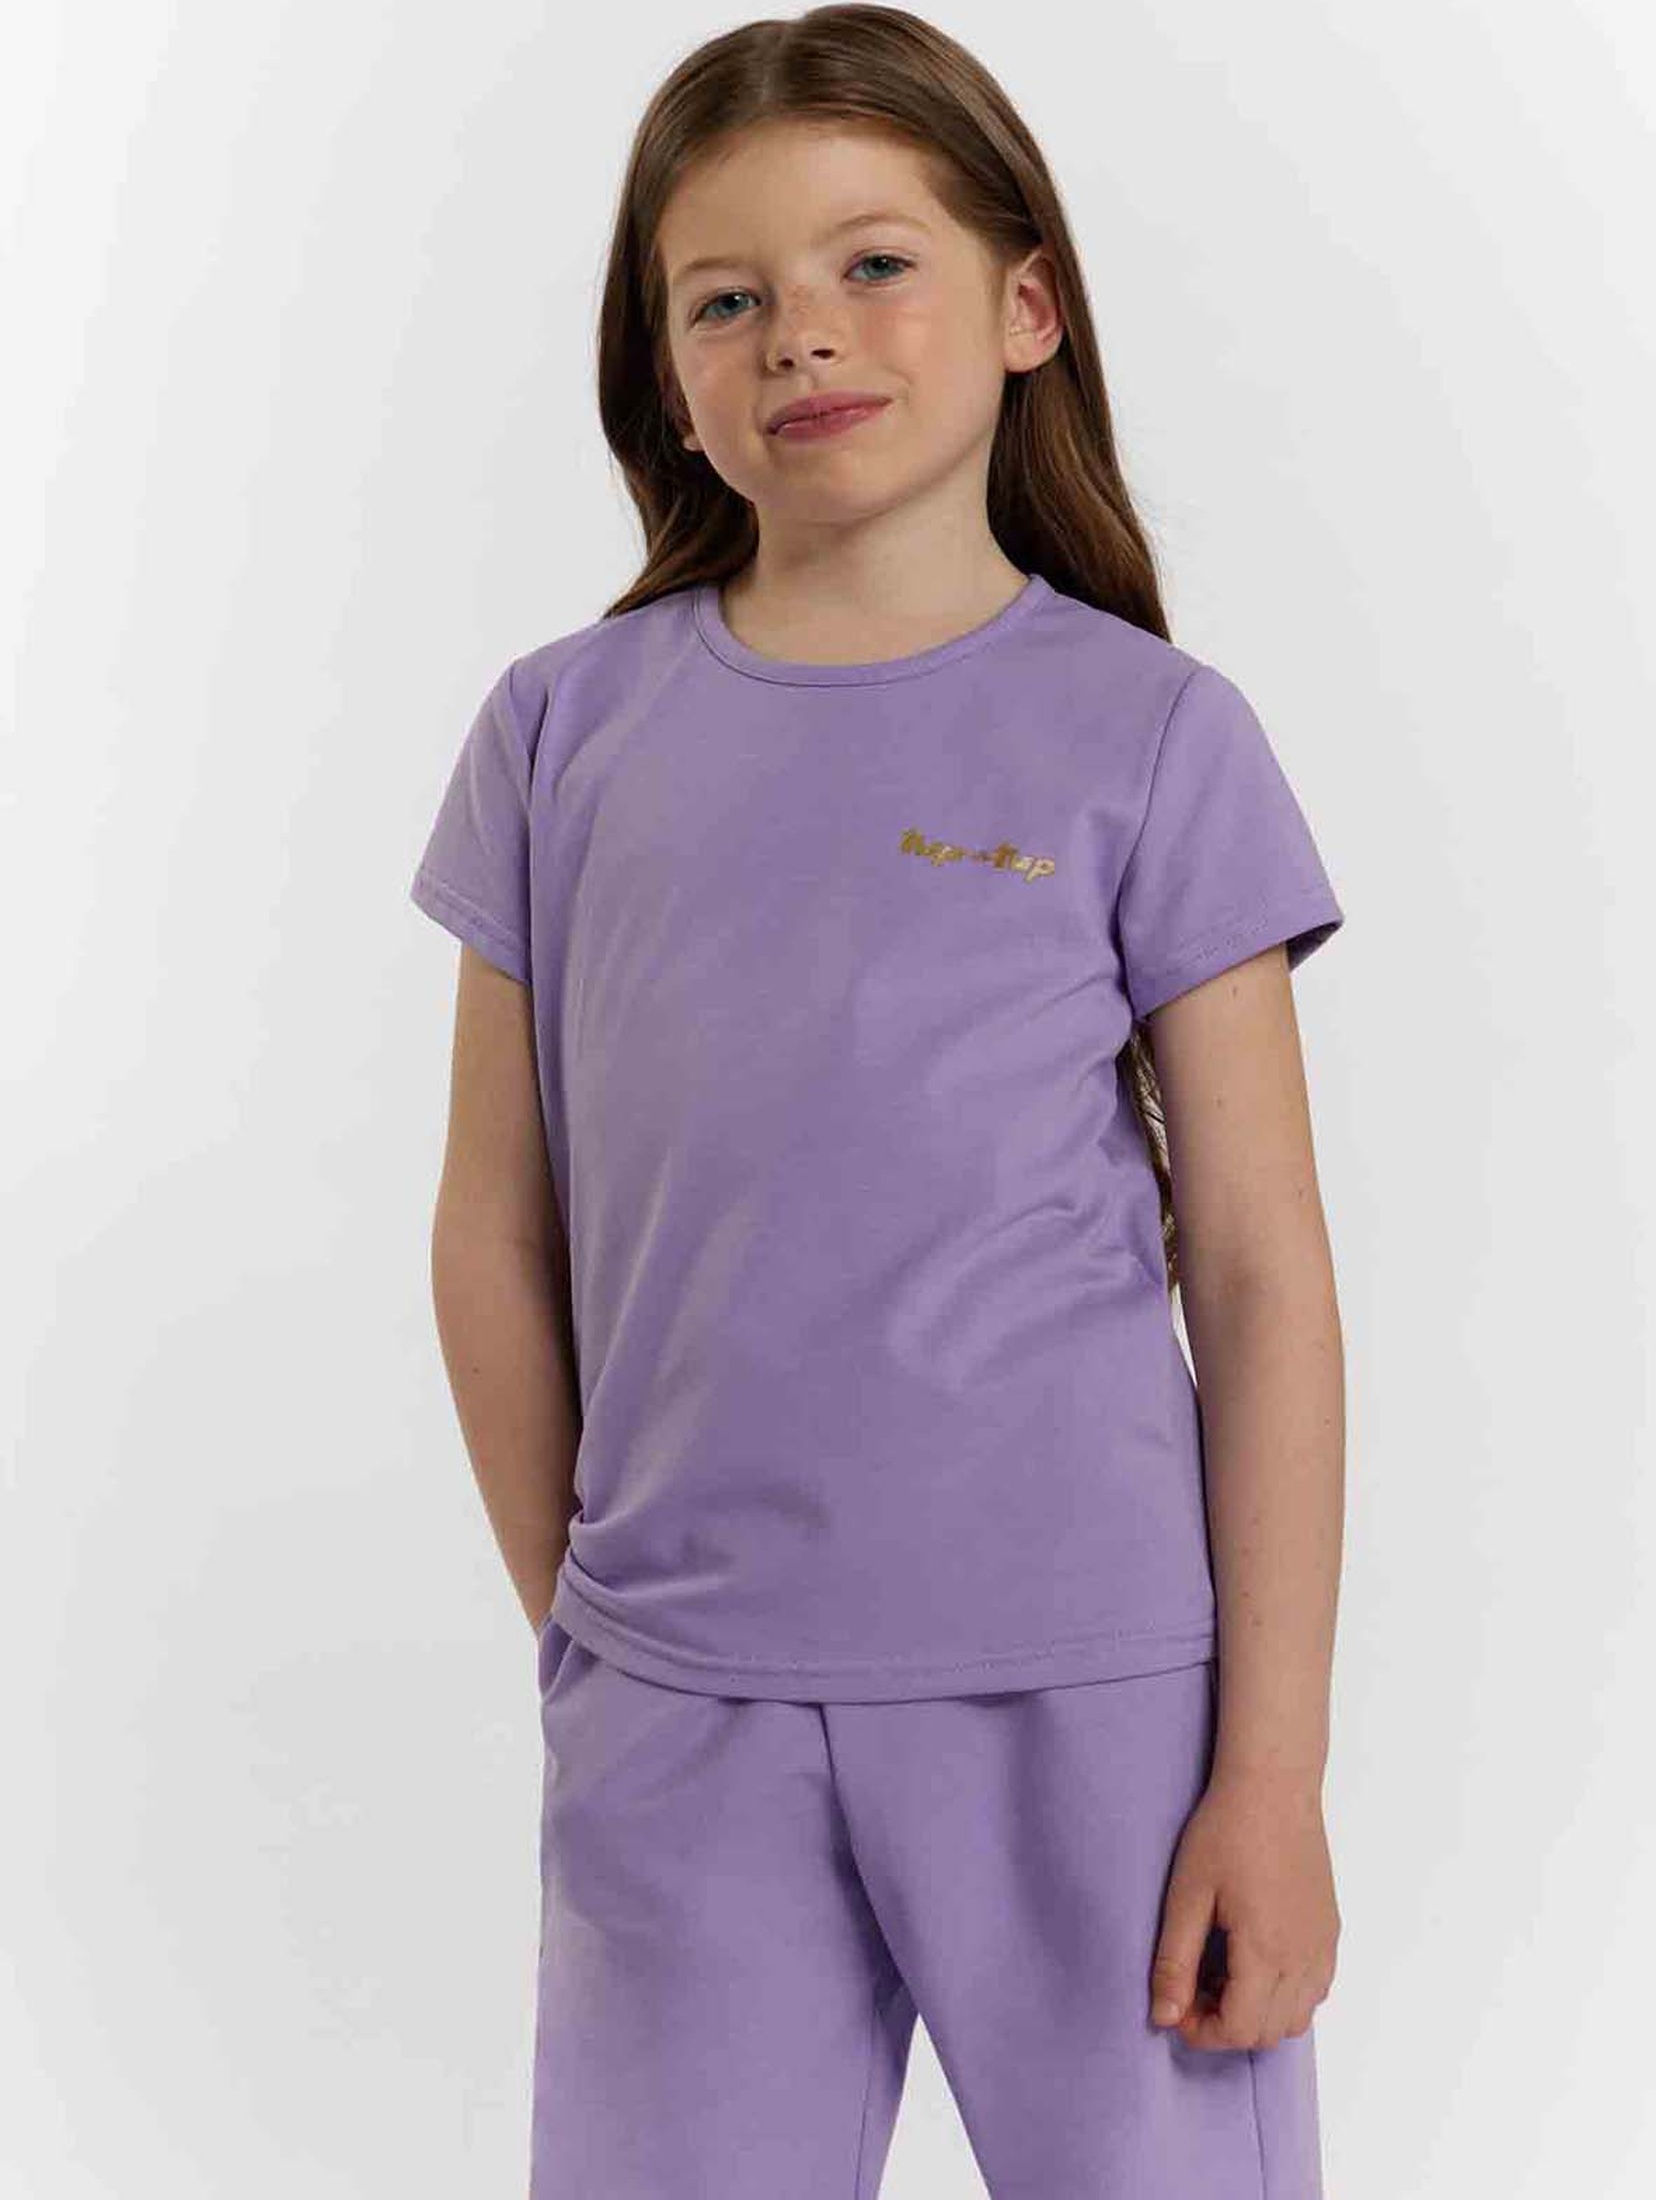 T-shirt lila dla dziewczynki z napisem Tup Tup